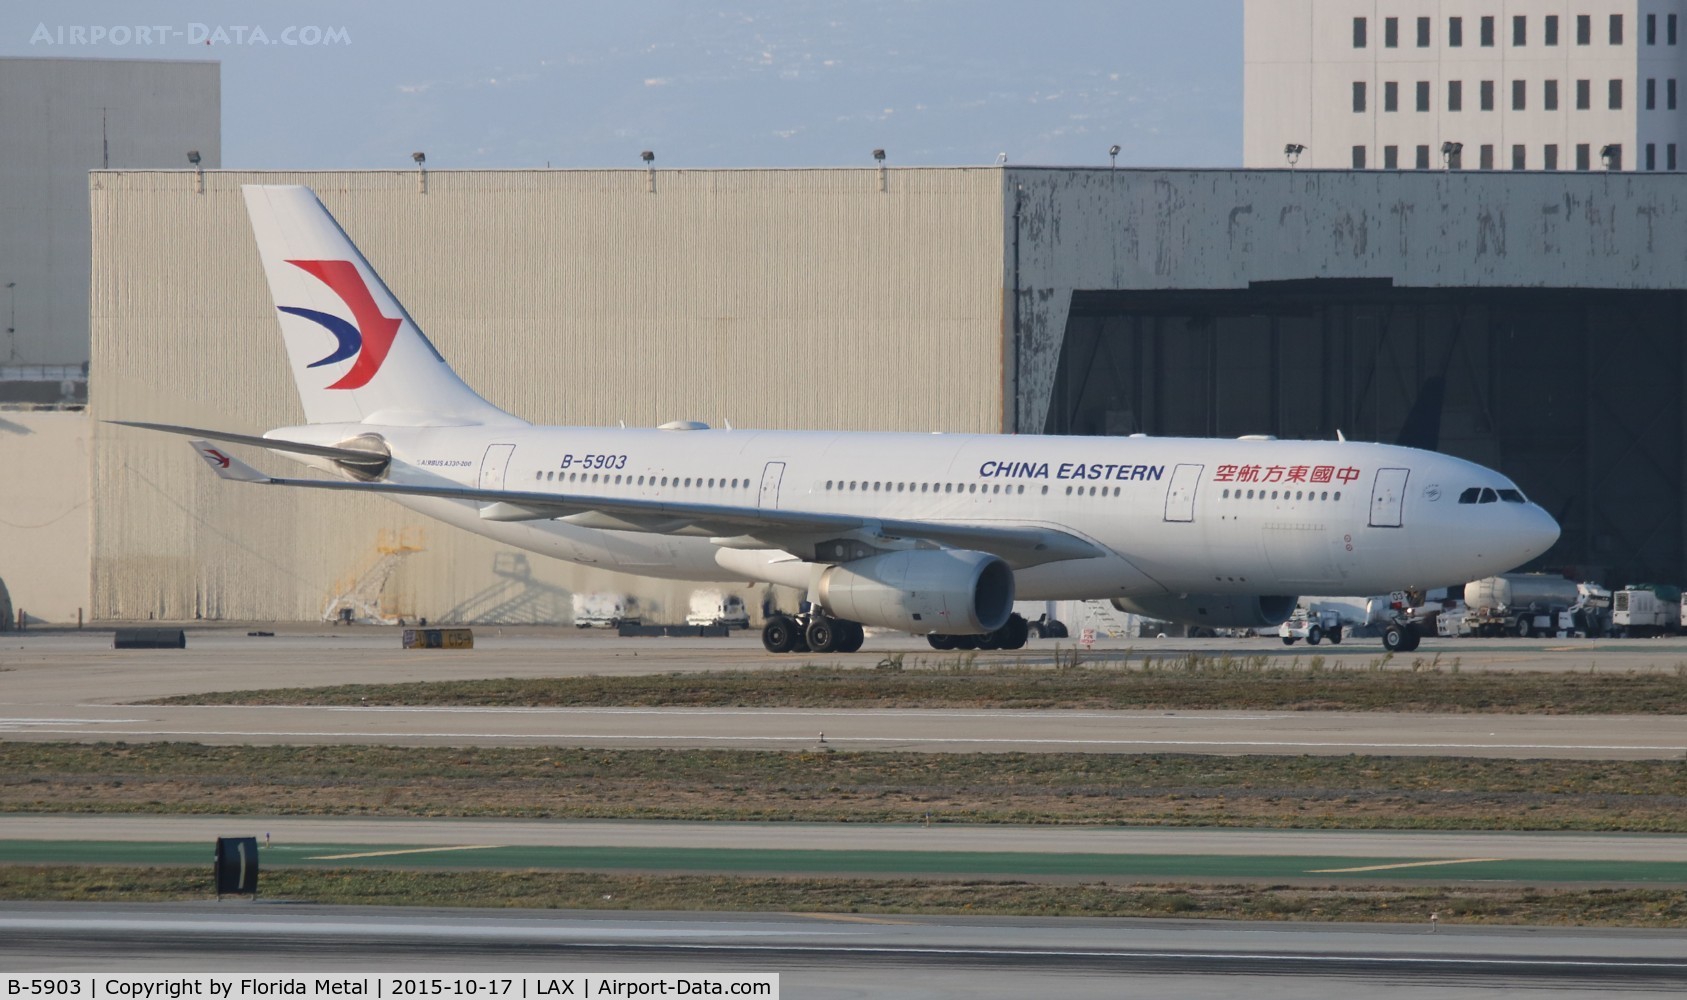 B-5903, 2012 Airbus A330-243 C/N 1331, China Eastern